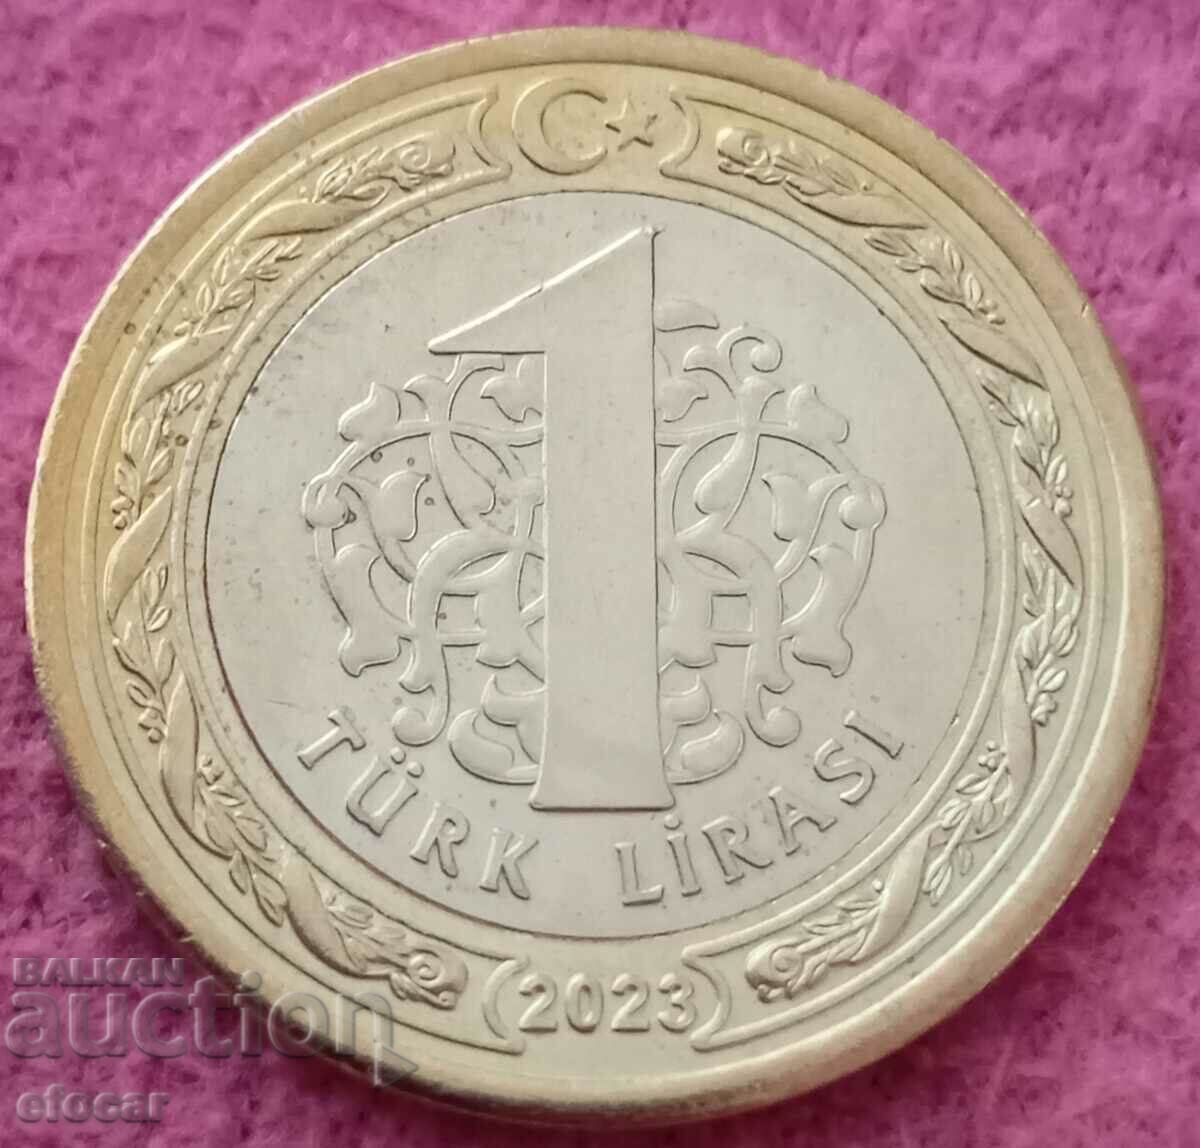 1 lira Turkey 2023 years